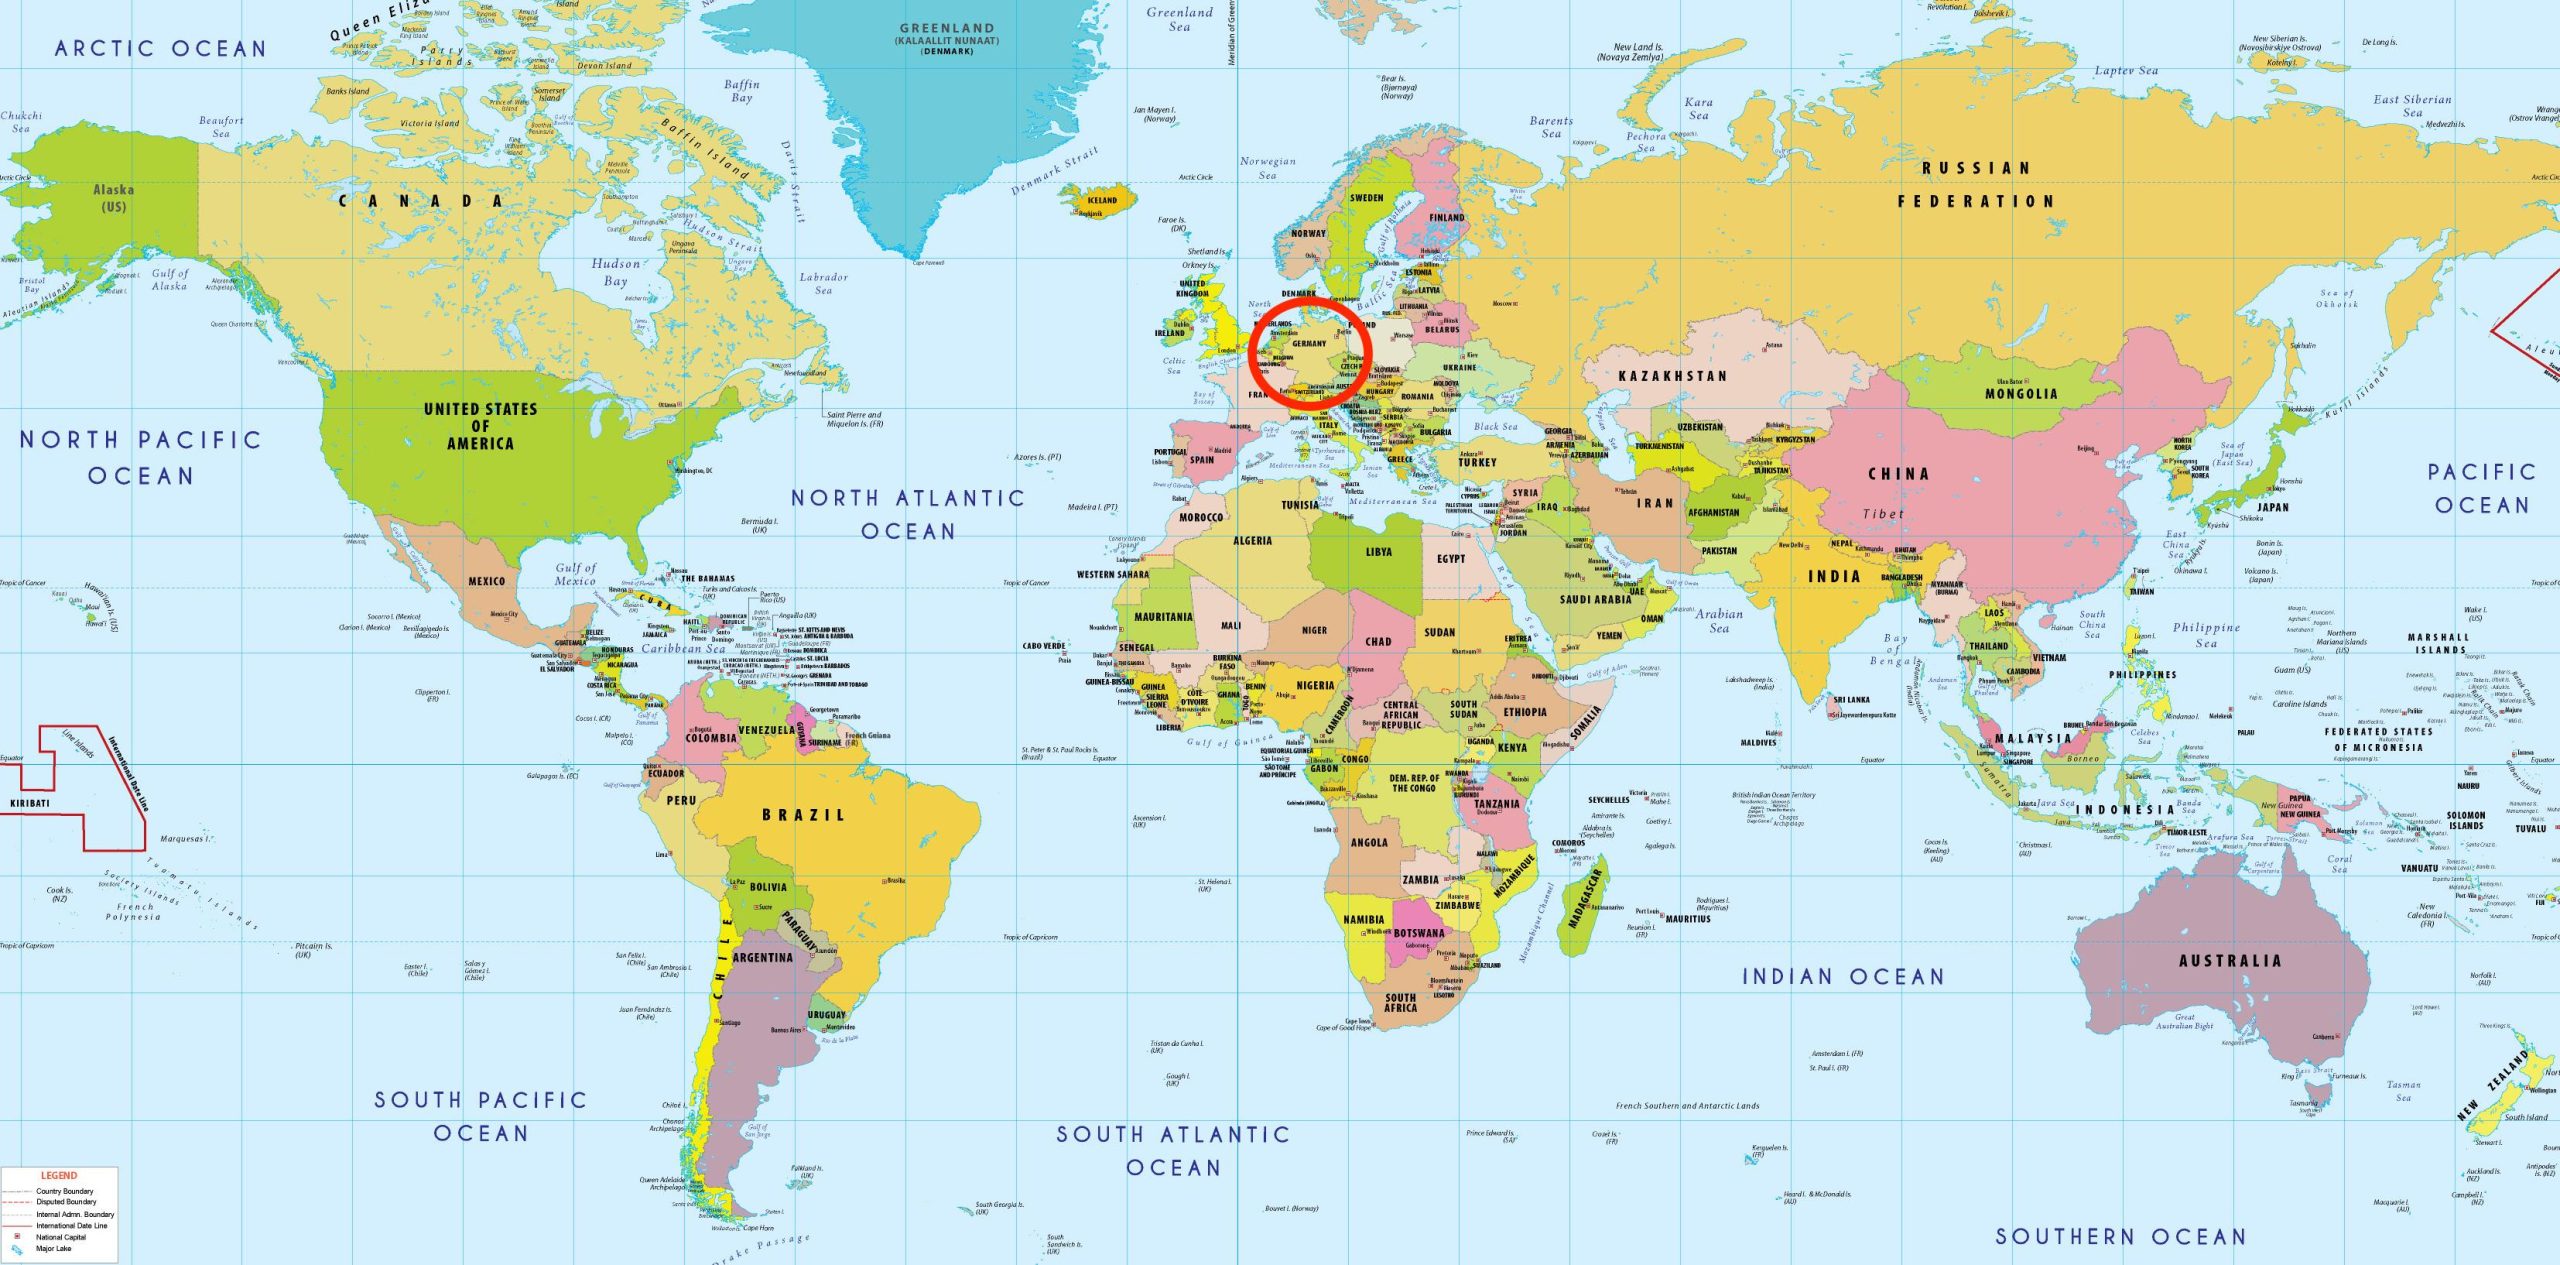 اين موقع المانيا في خريطة العالم